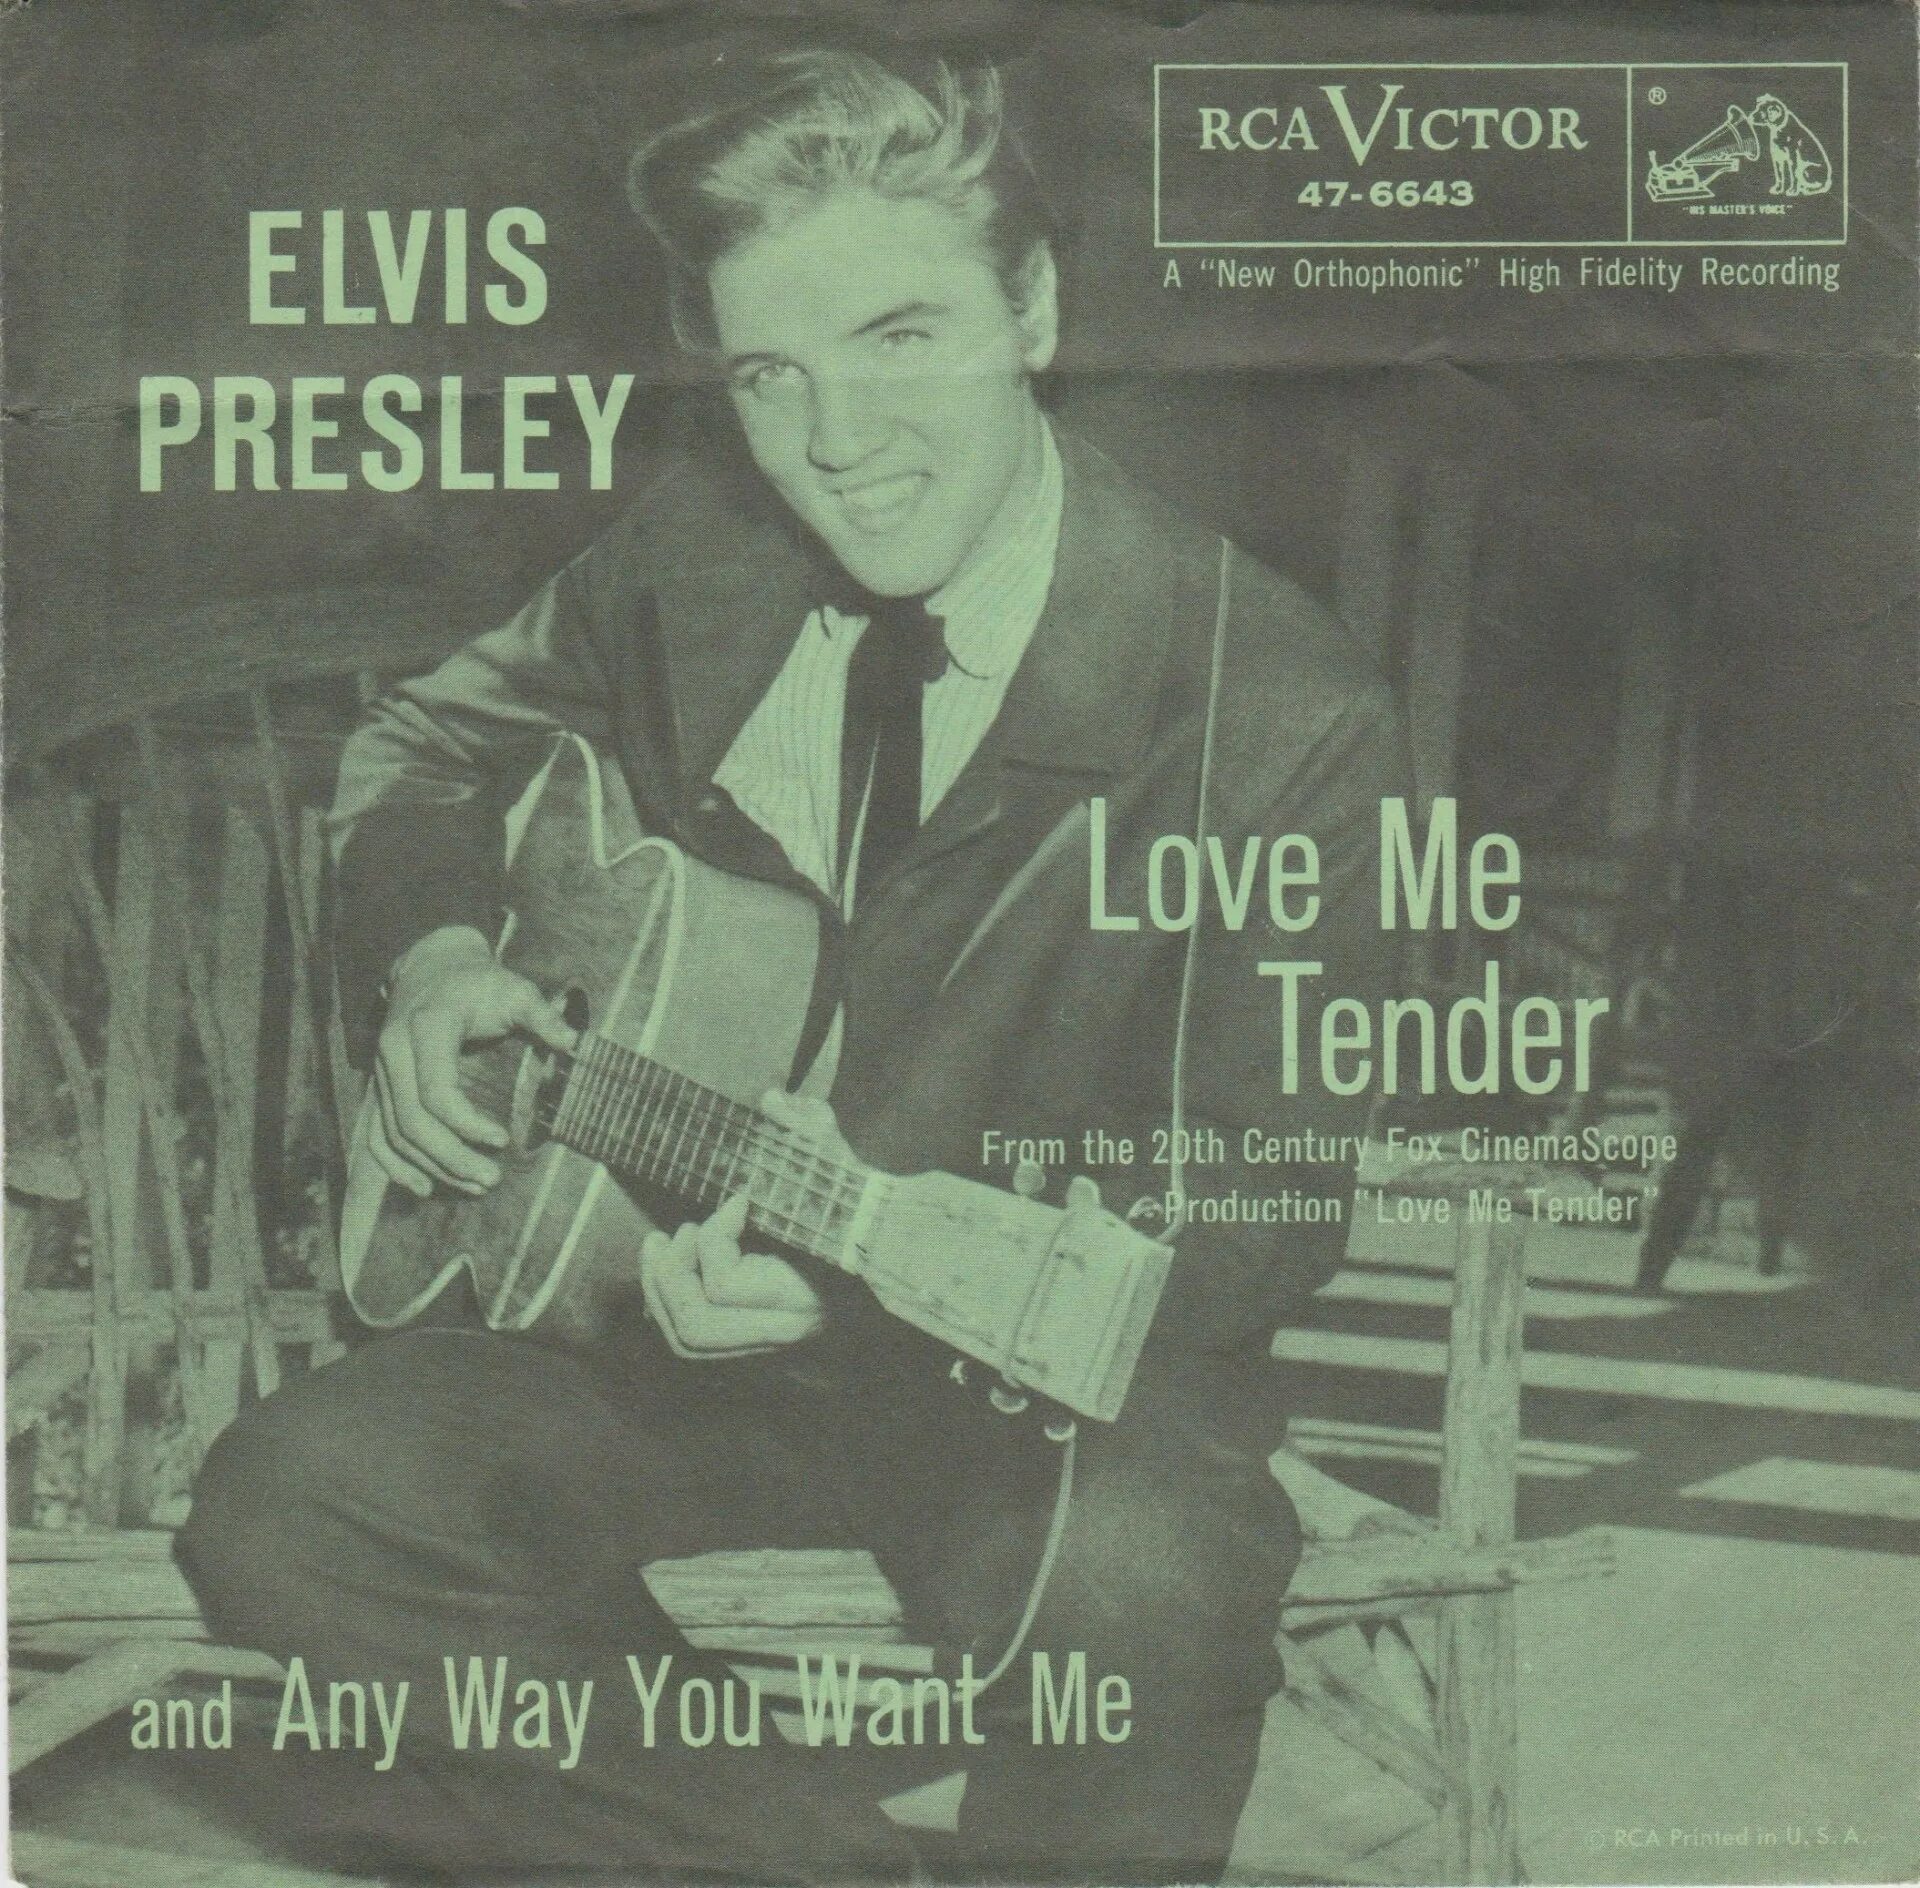 Пресли love me tender. Элвис Пресли лав ми тендер. Elvis Presley Love me tender обложка. Elvis Presley - Love me обложка. Love me tender - Single обложка.